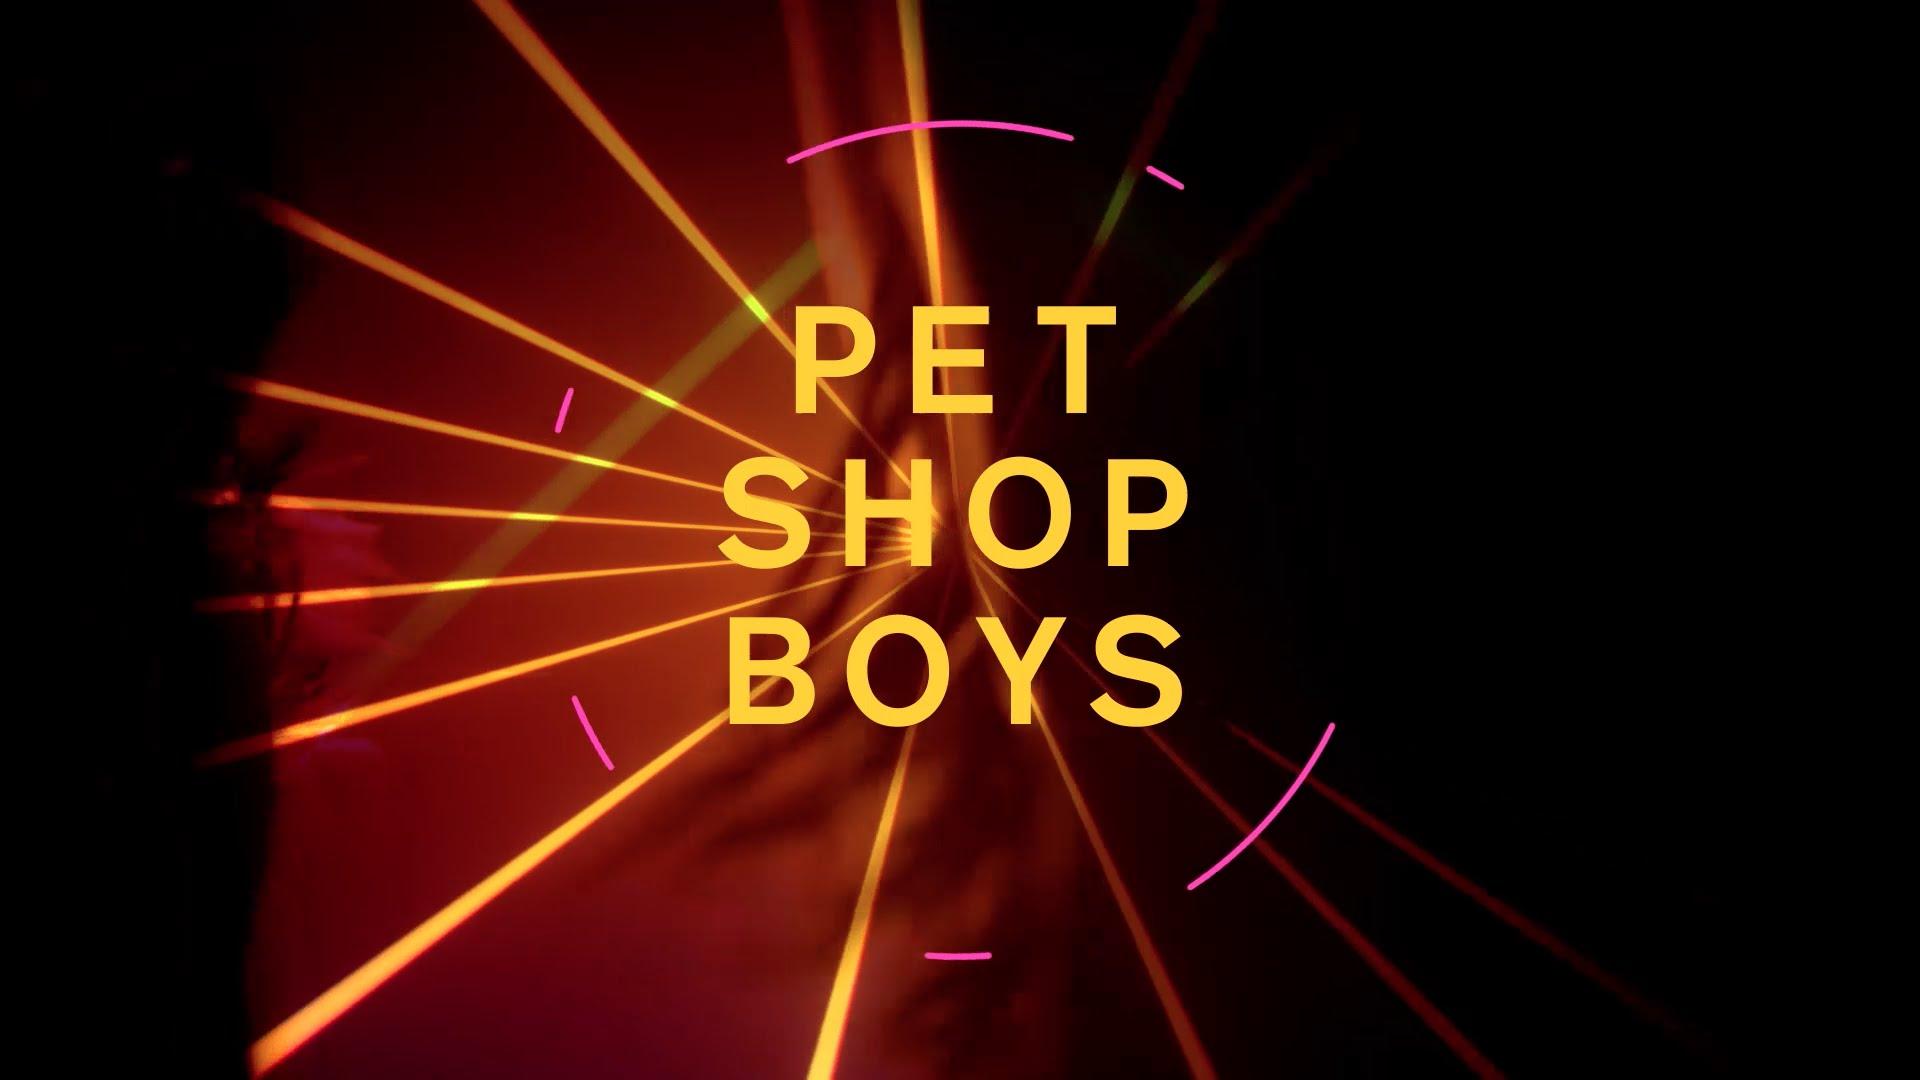 Pet shop boys на русском. Pet shop boys super 2016. Pet shop boys альбомы. Pet shop boys обложки альбомов. Pet shop boys альбом super.